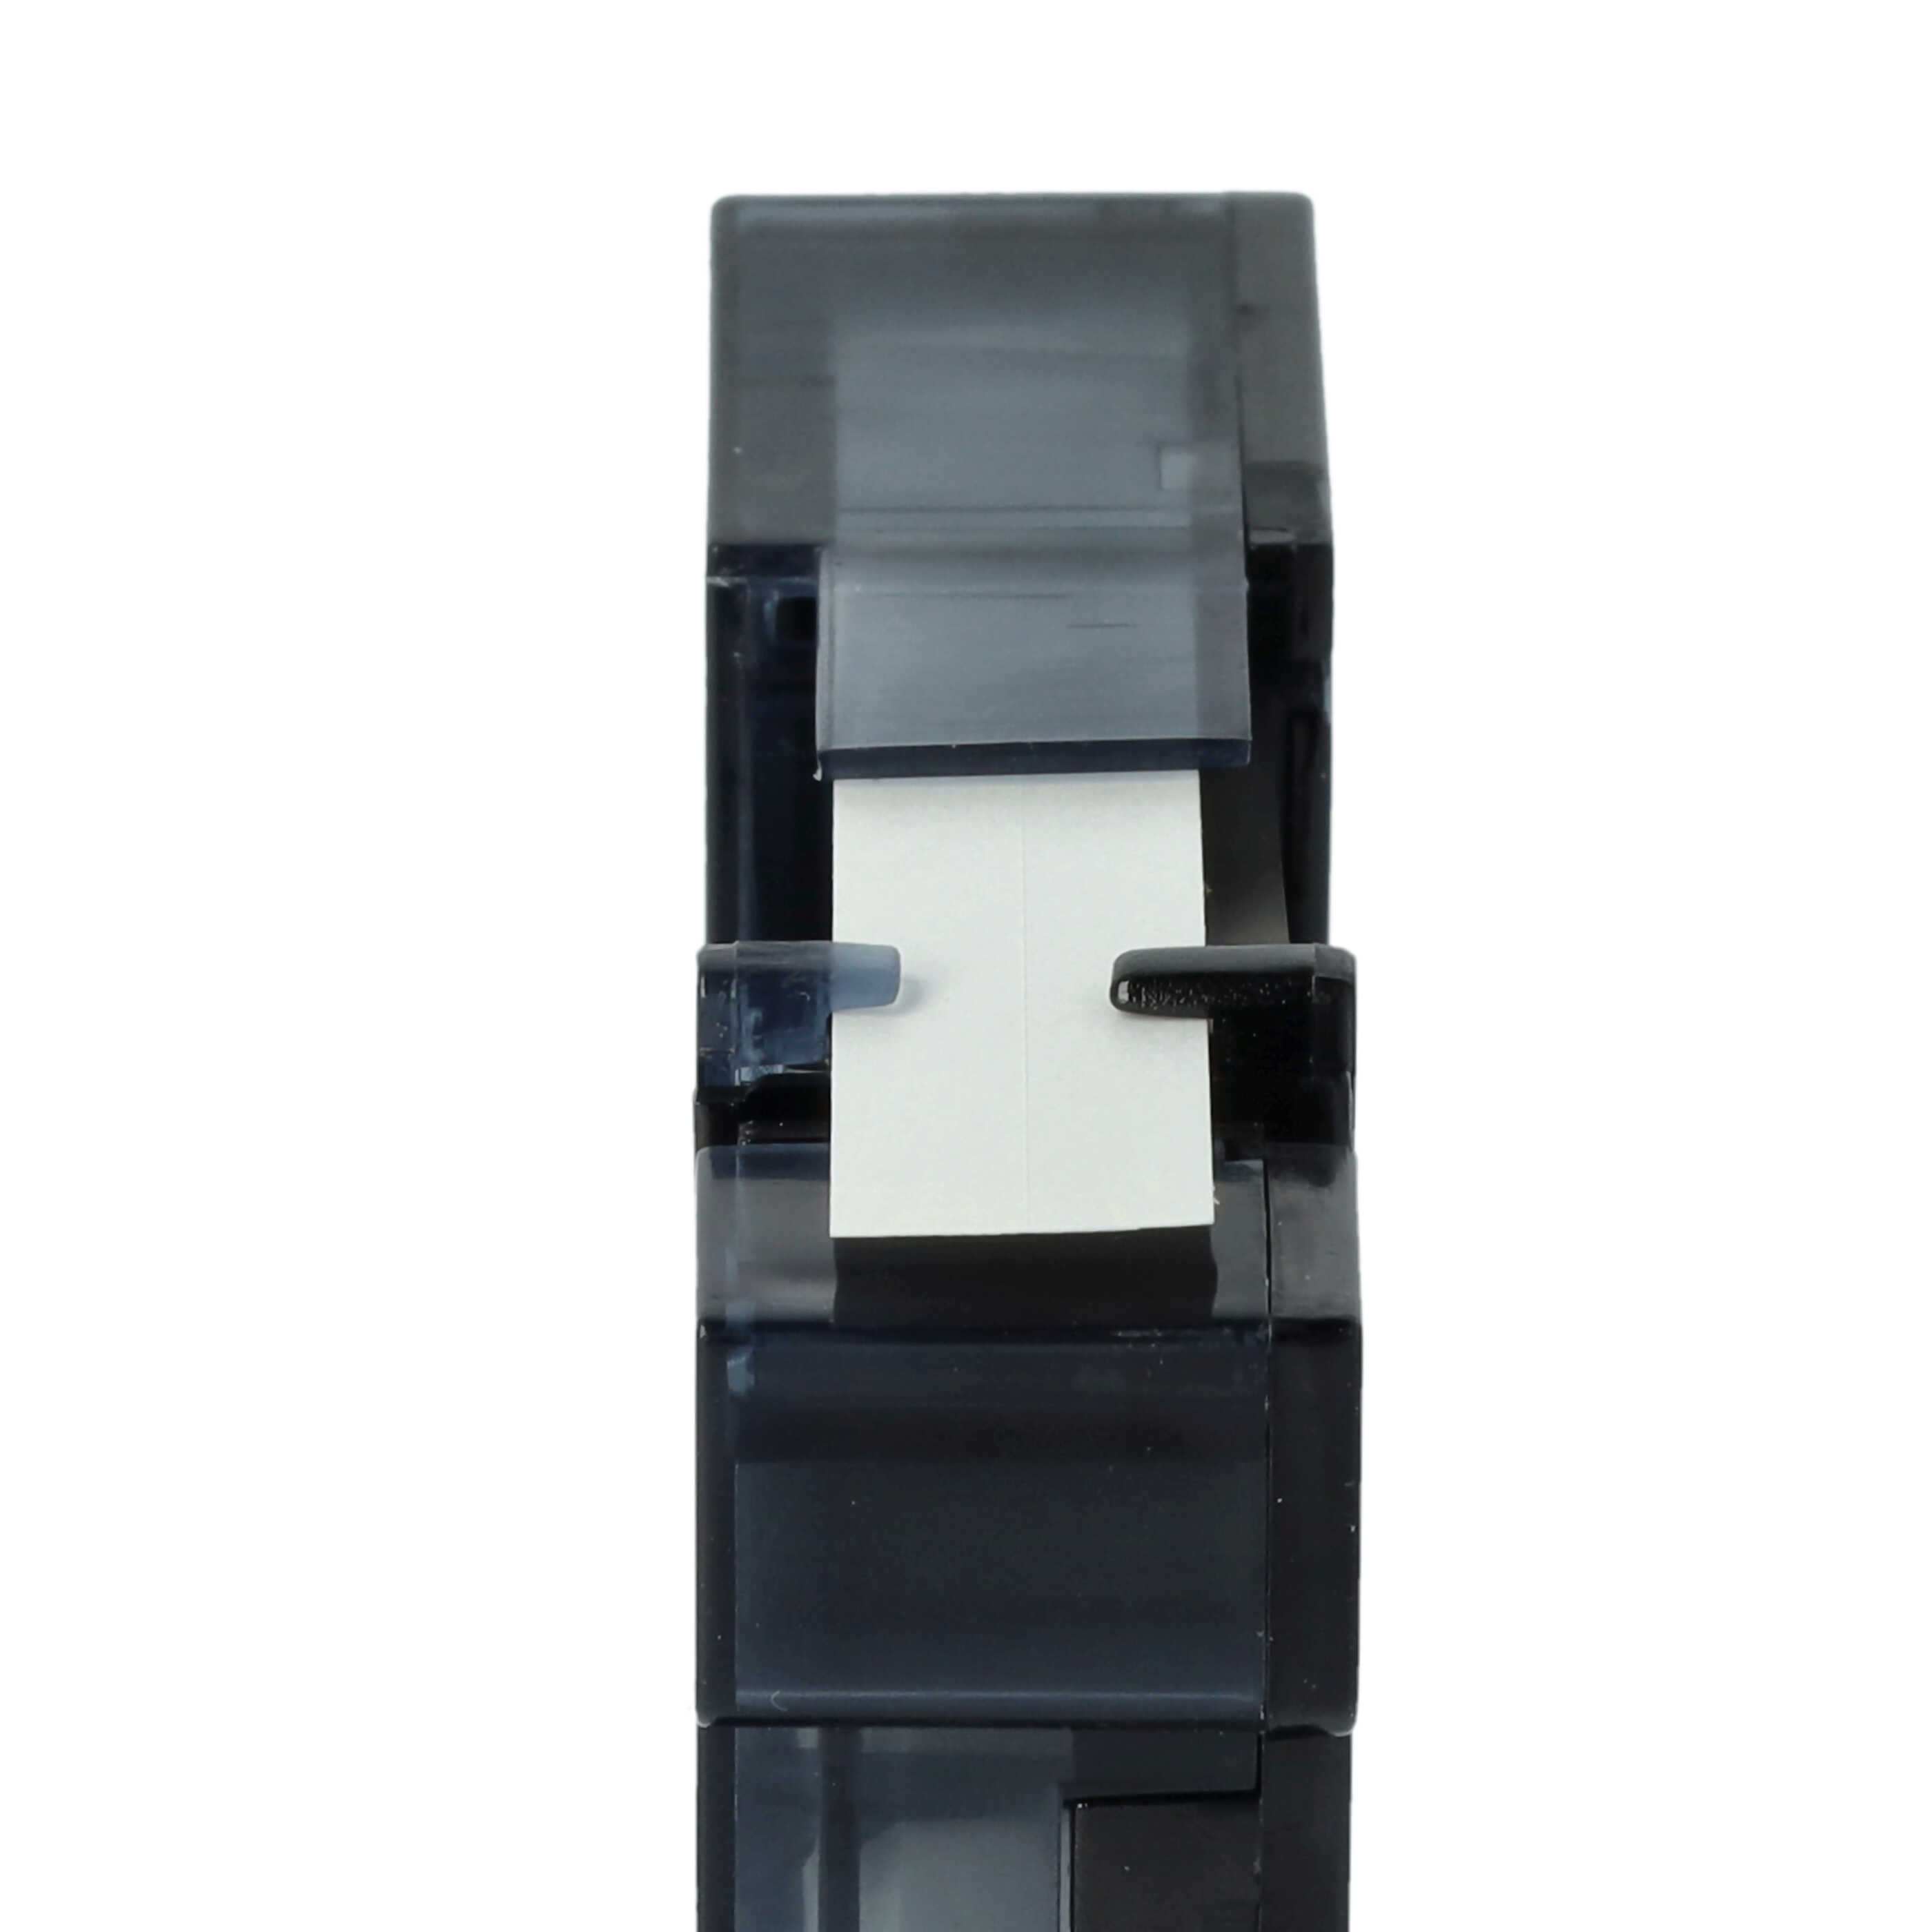 5x Casete cinta escritura reemplaza Dymo S0720680, 40913, D1 Negro su Blanco